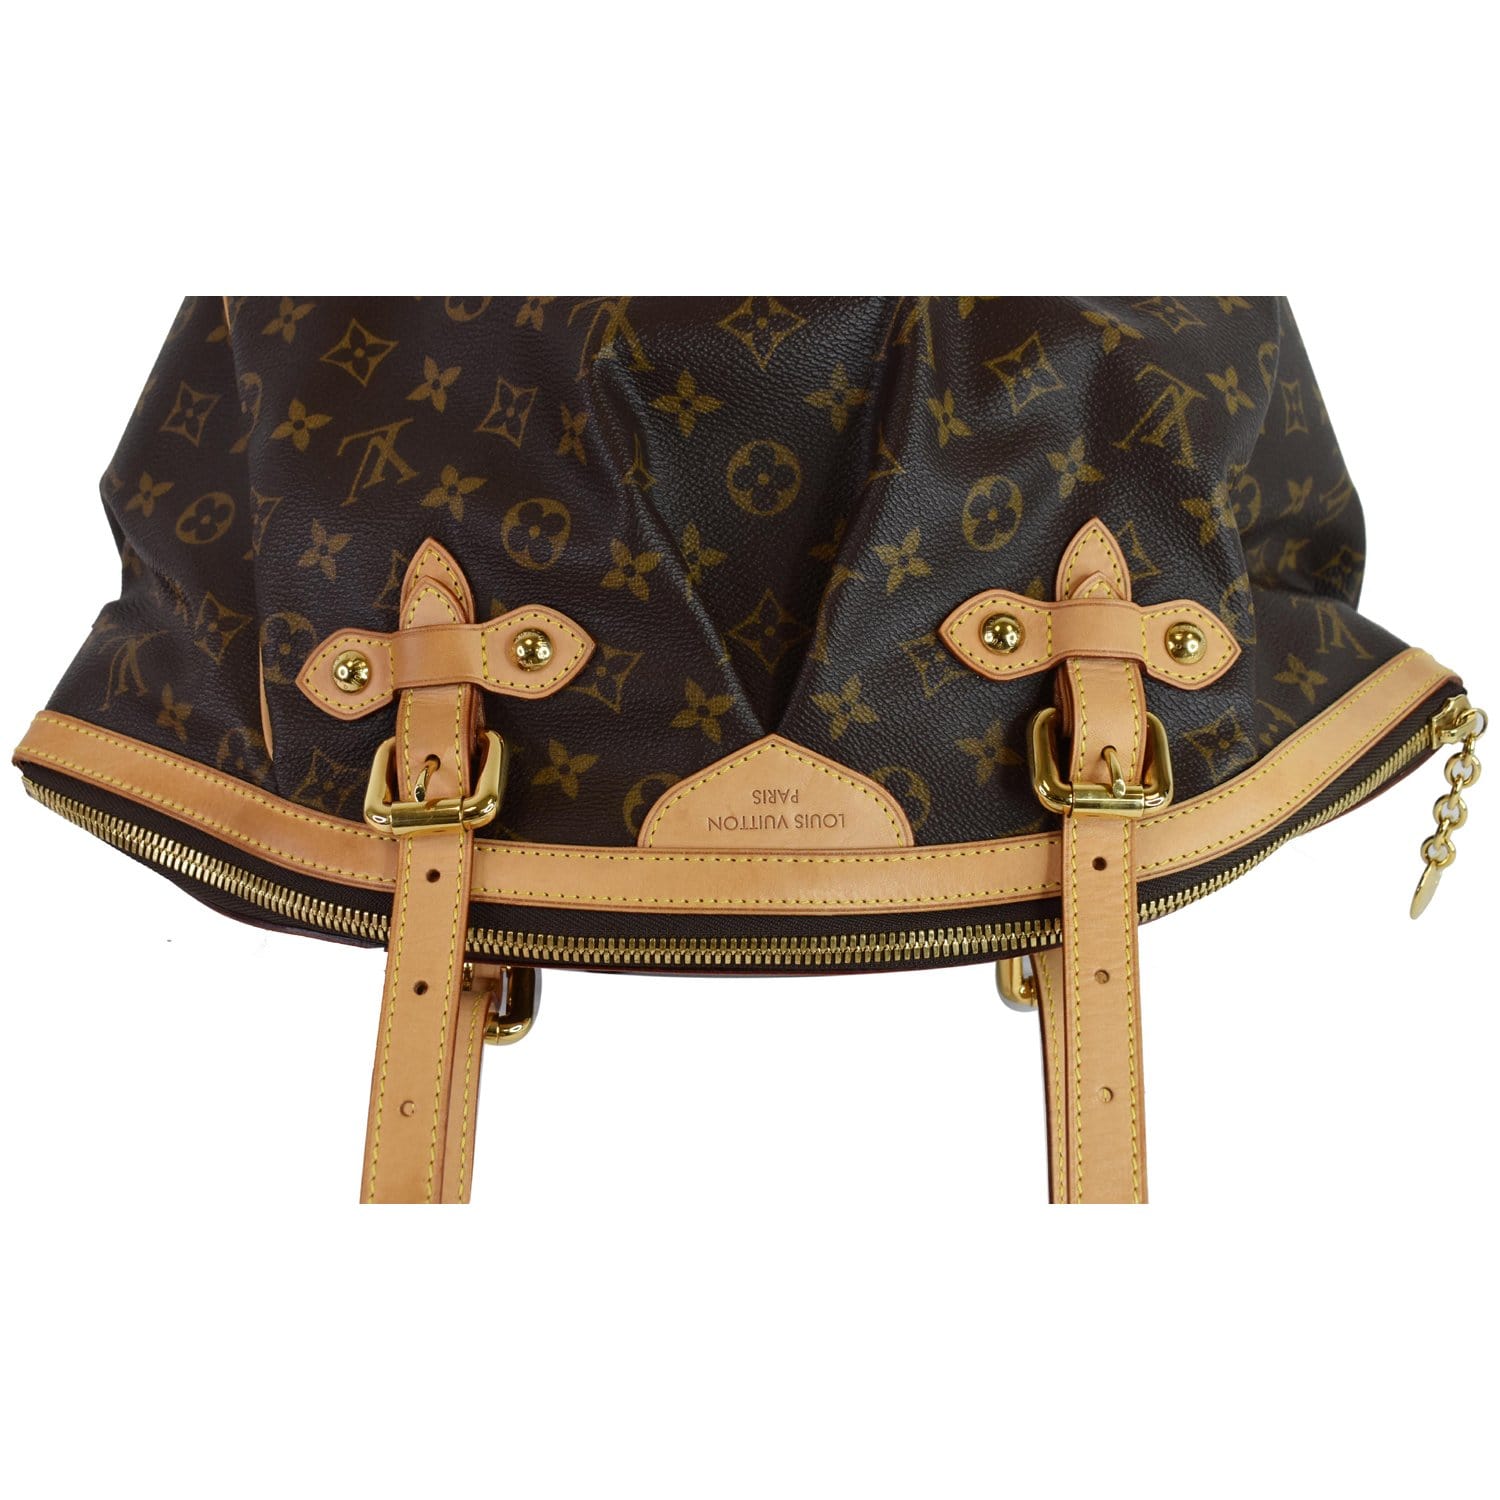 Louis Vuitton Monogram Tivoli Gm Bag - 7 For Sale on 1stDibs